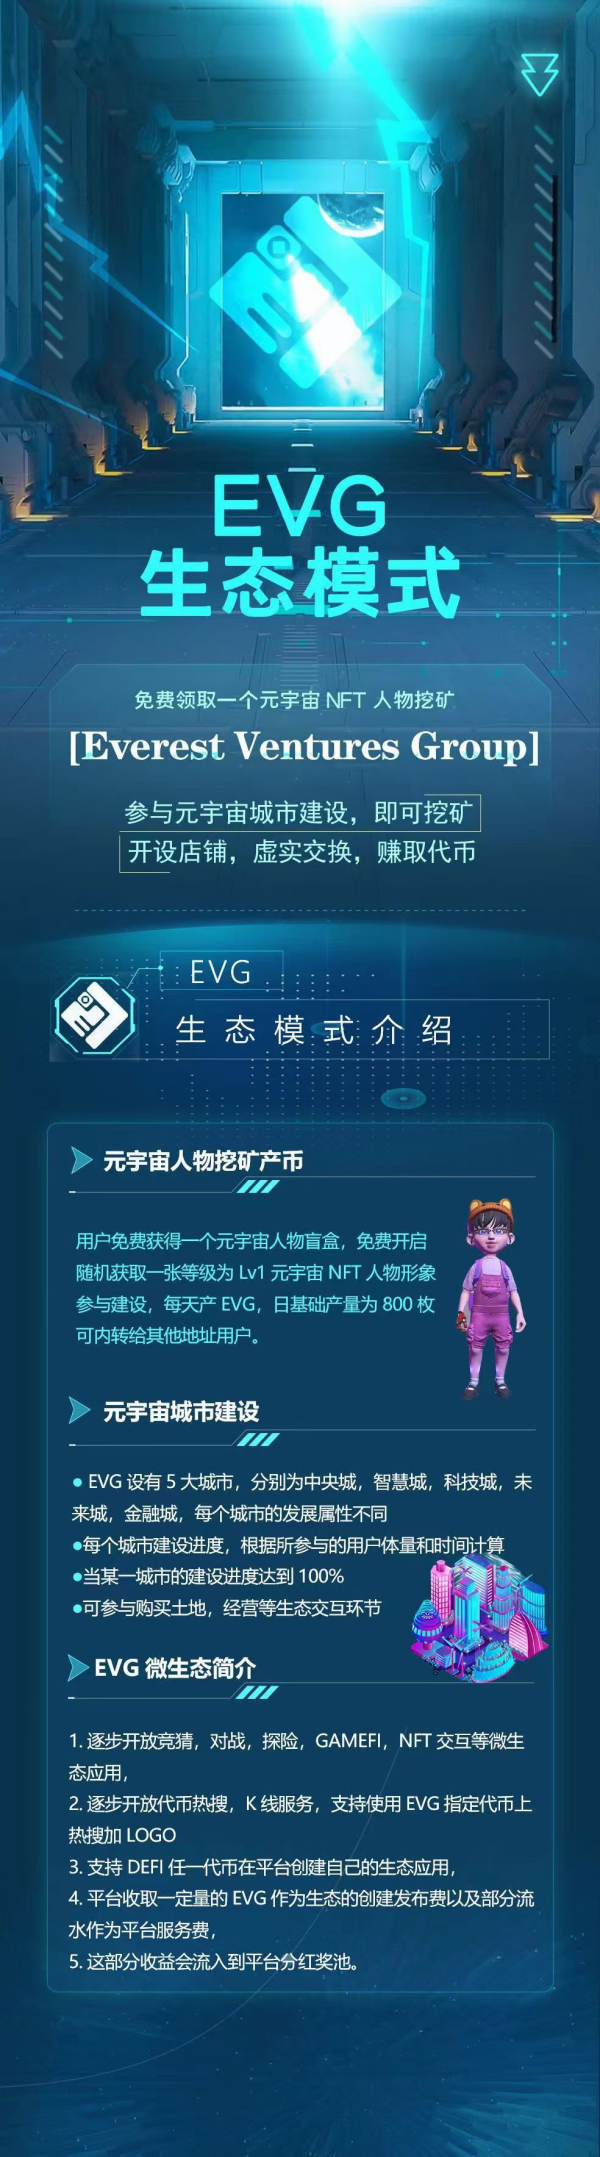 首码香港EVG挖k生态预热，上线即开通内转交易